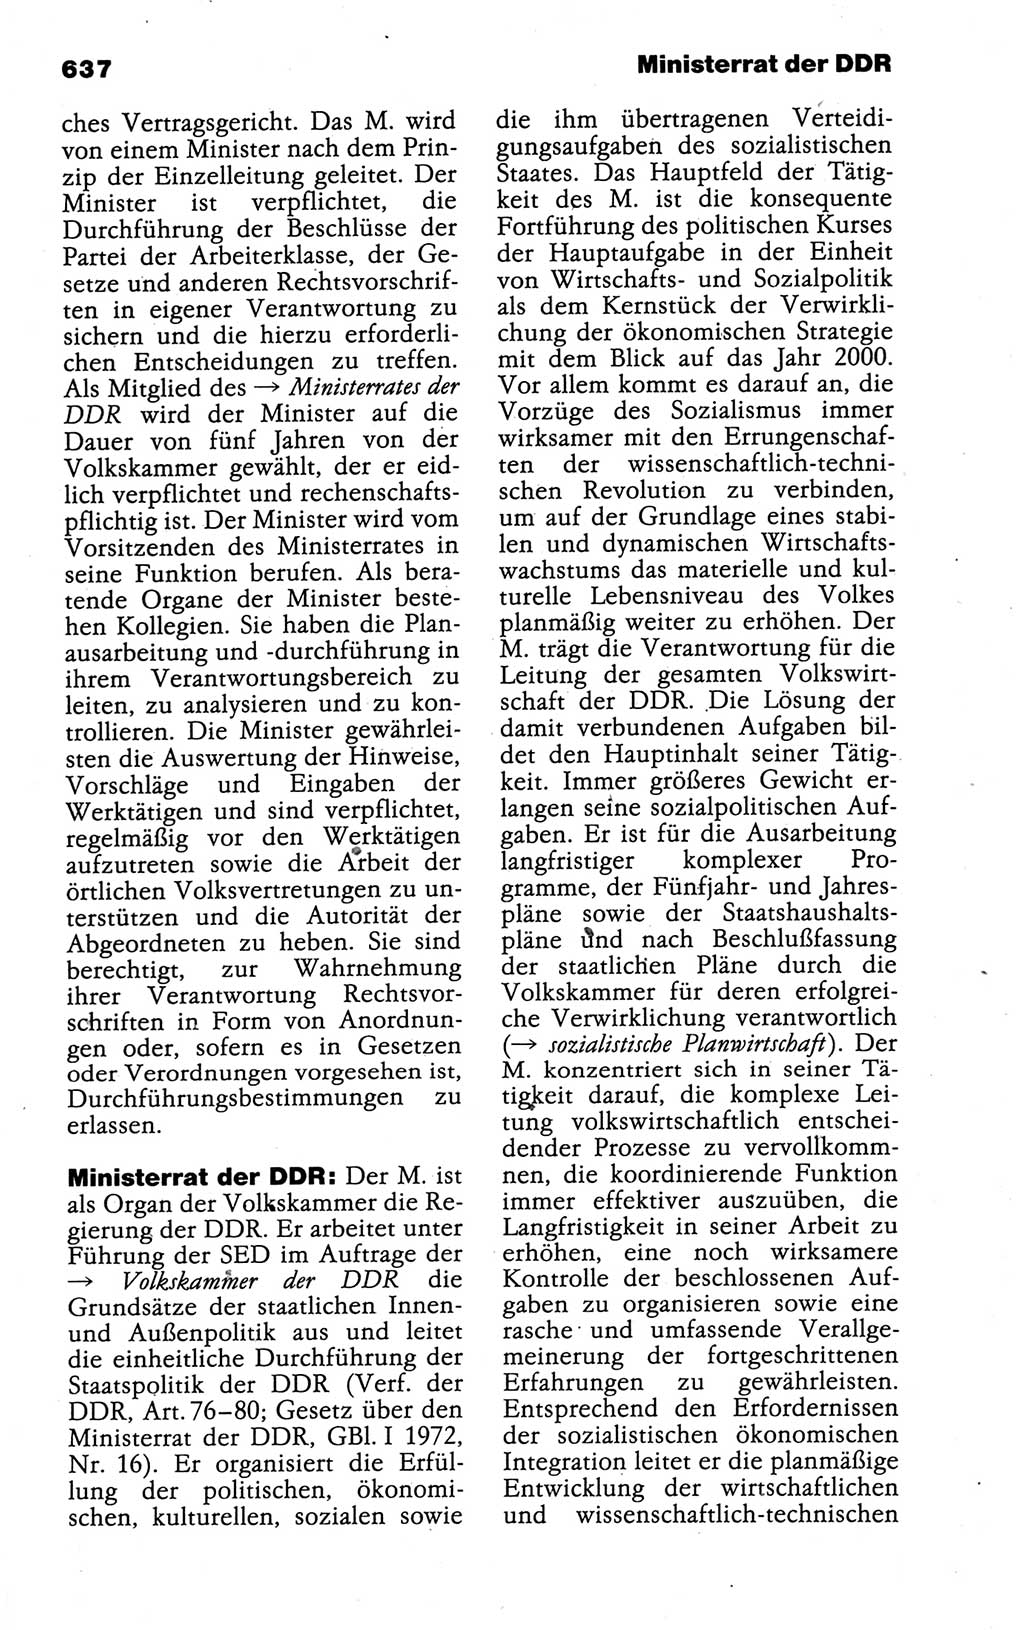 Kleines politisches Wörterbuch [Deutsche Demokratische Republik (DDR)] 1988, Seite 637 (Kl. pol. Wb. DDR 1988, S. 637)